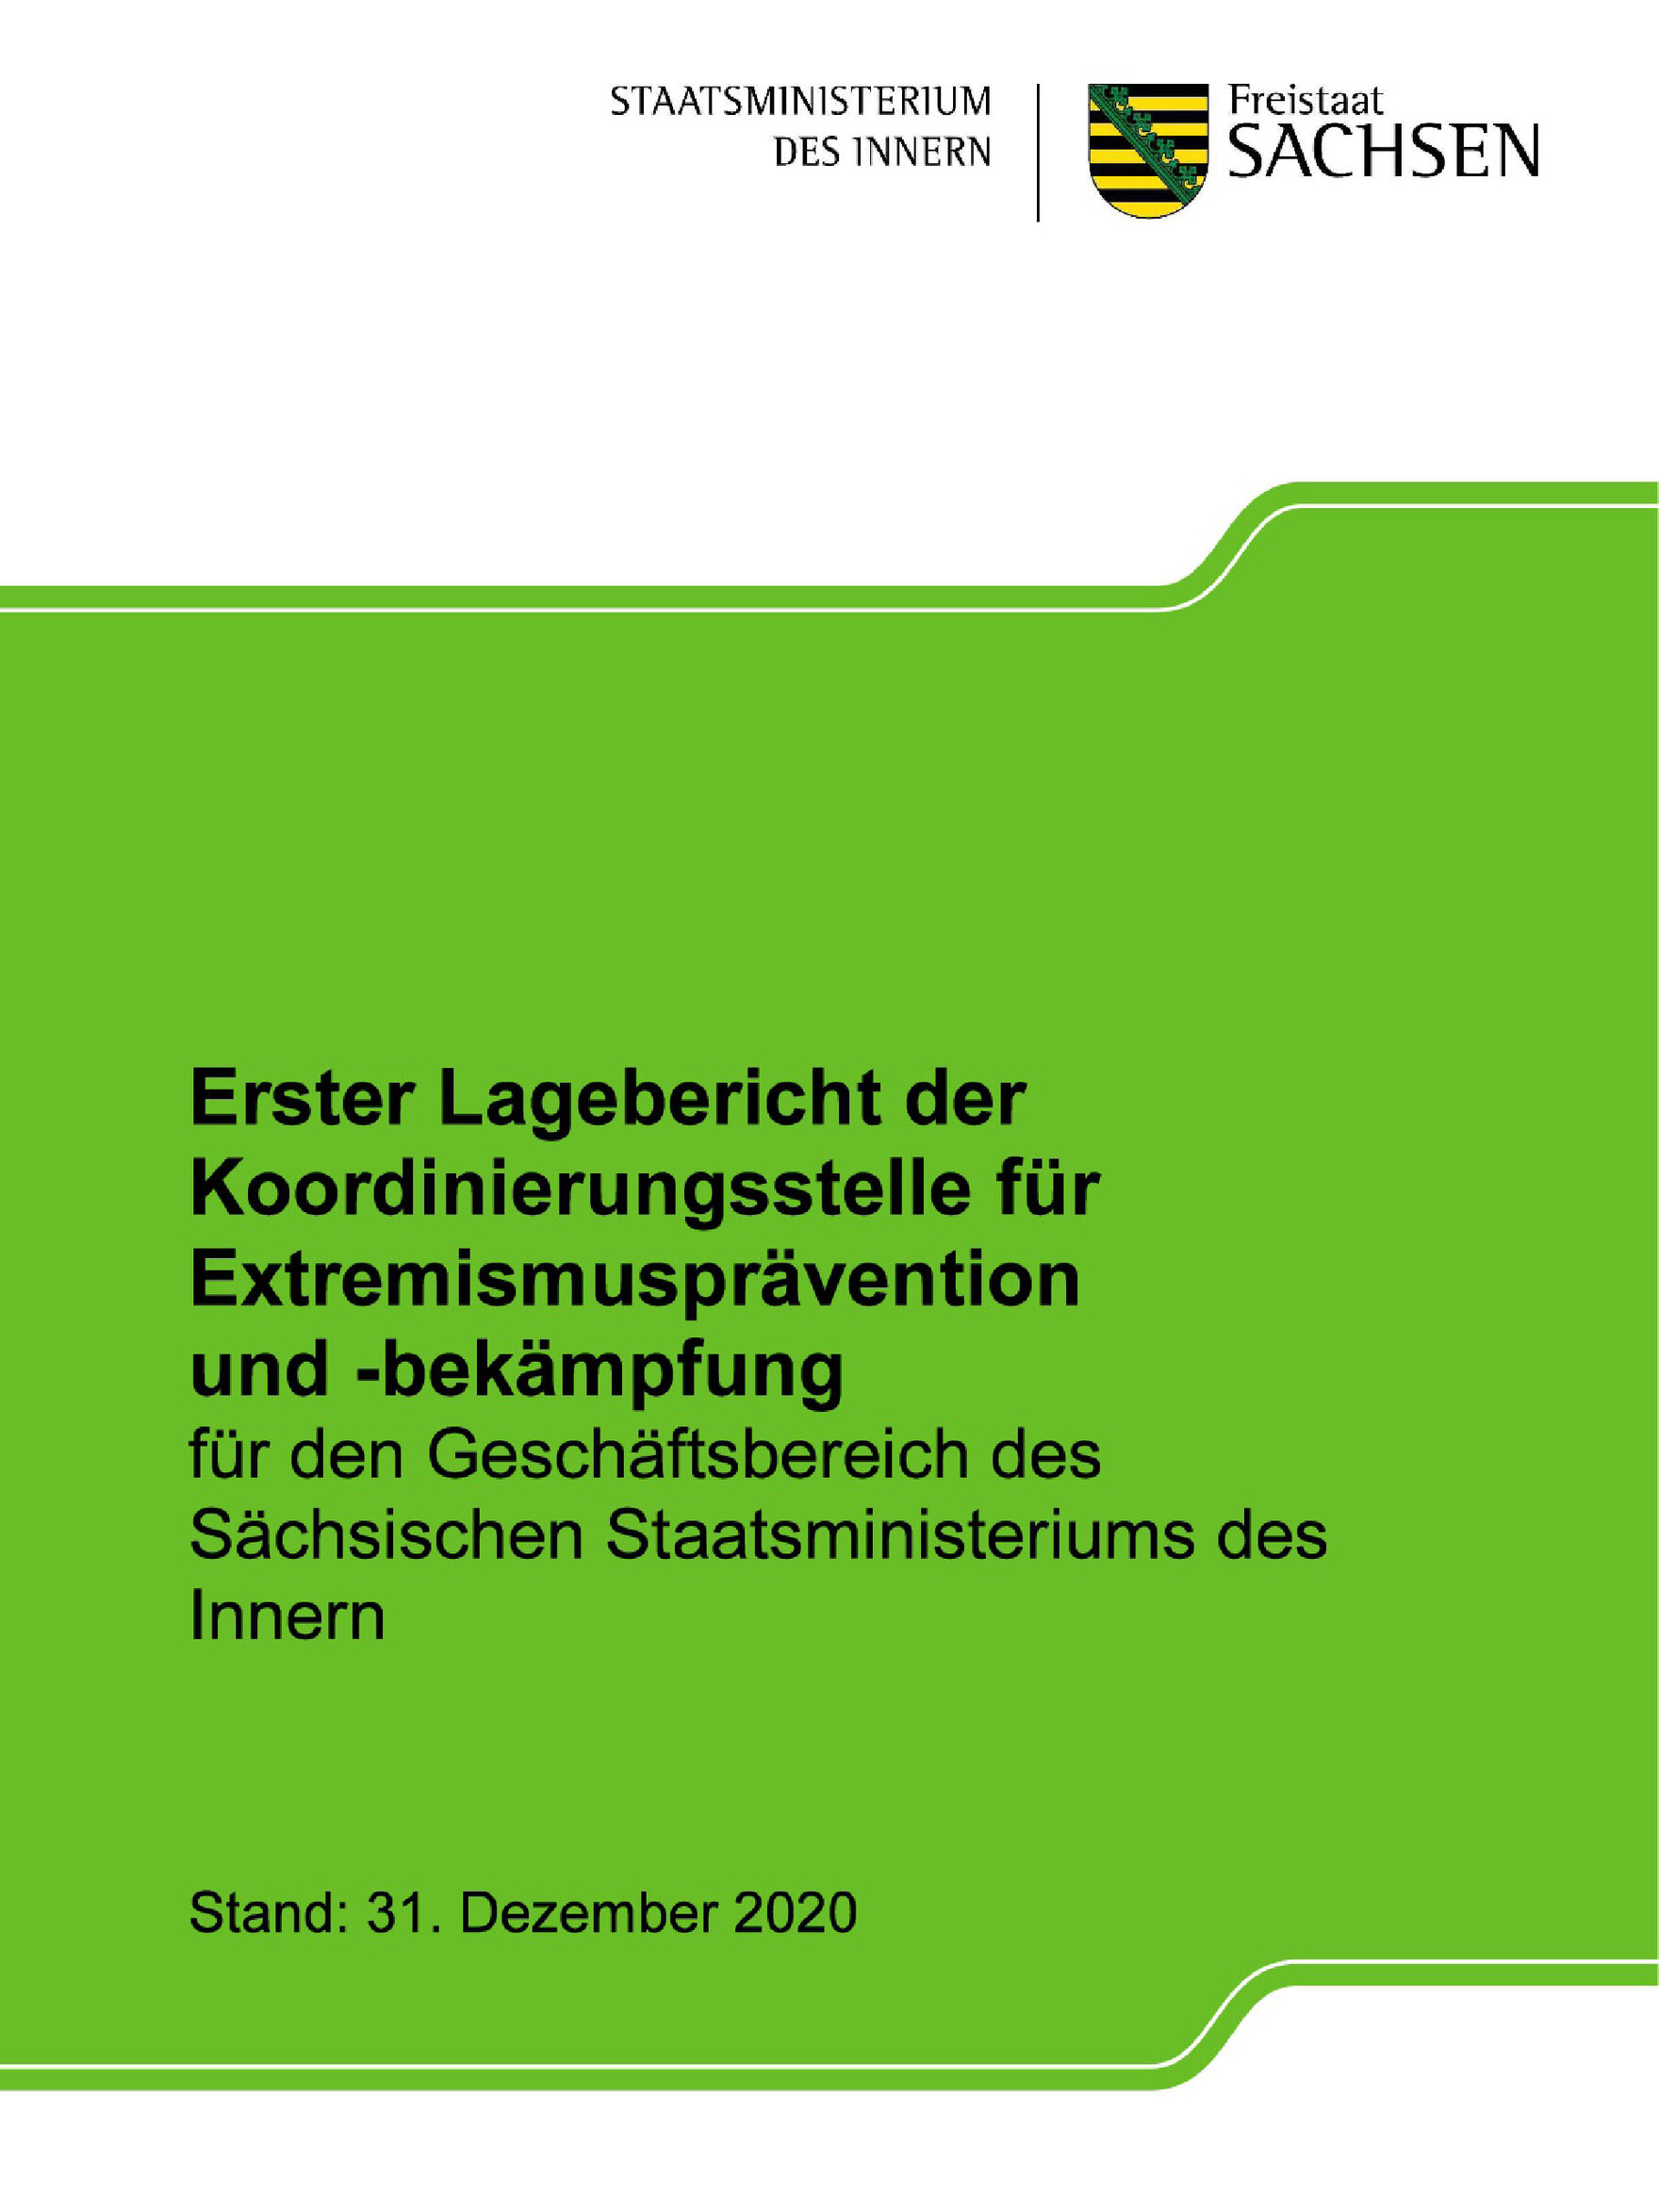 Das Bild zeigt das Deckblatt eines 32-seitigen Dokuments. Auf einer grünen Fläche steht unter dem Wappen des Freistaats: »Erster Lagebericht der Koordinierungsstelle für Extremismusprävention und -bekämpfung …« mit Stand 31. Dezember 2020.